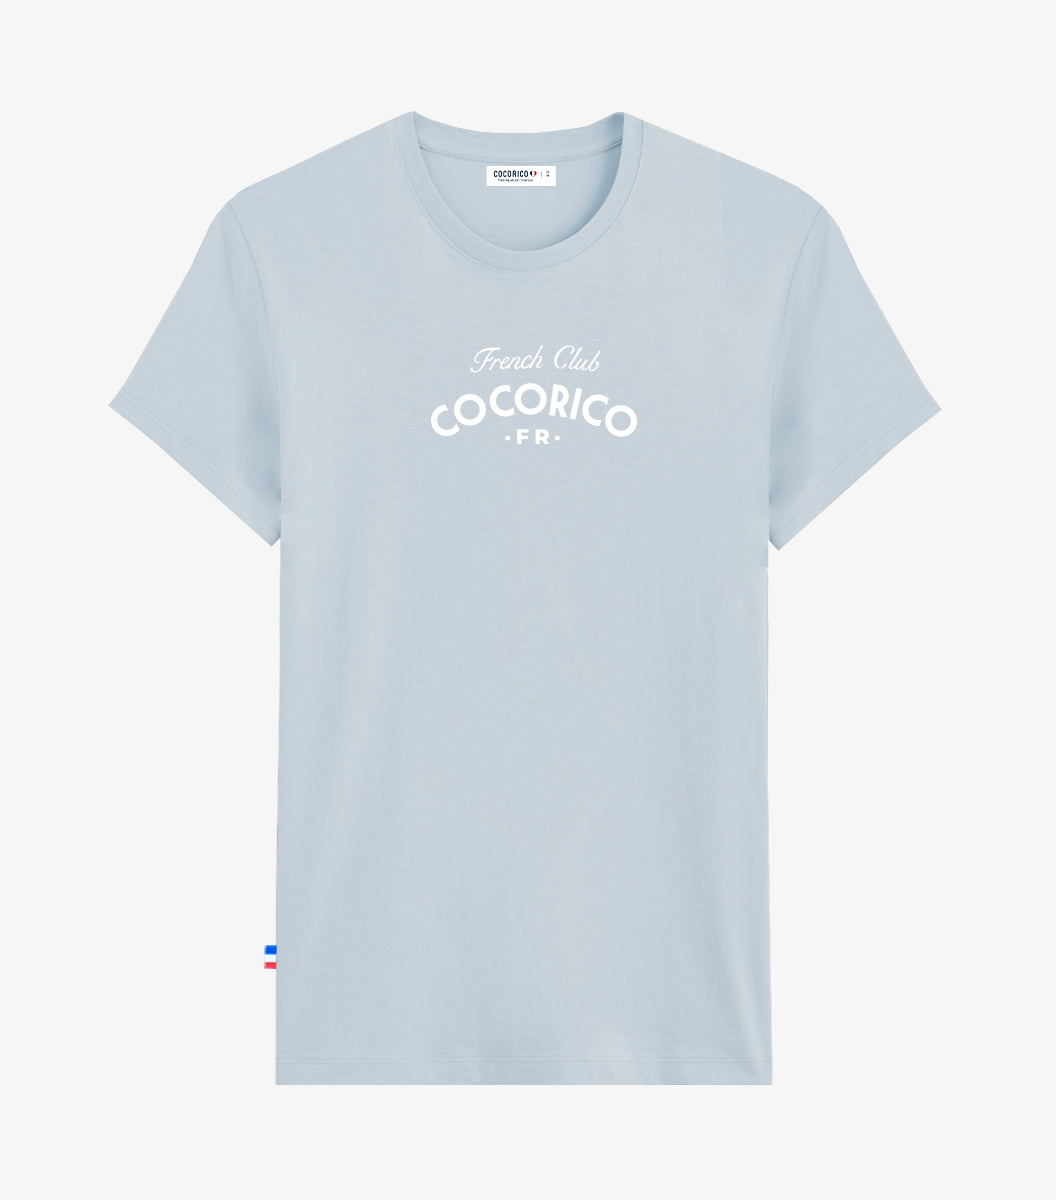 T-shirt Femme Ciel - French Club